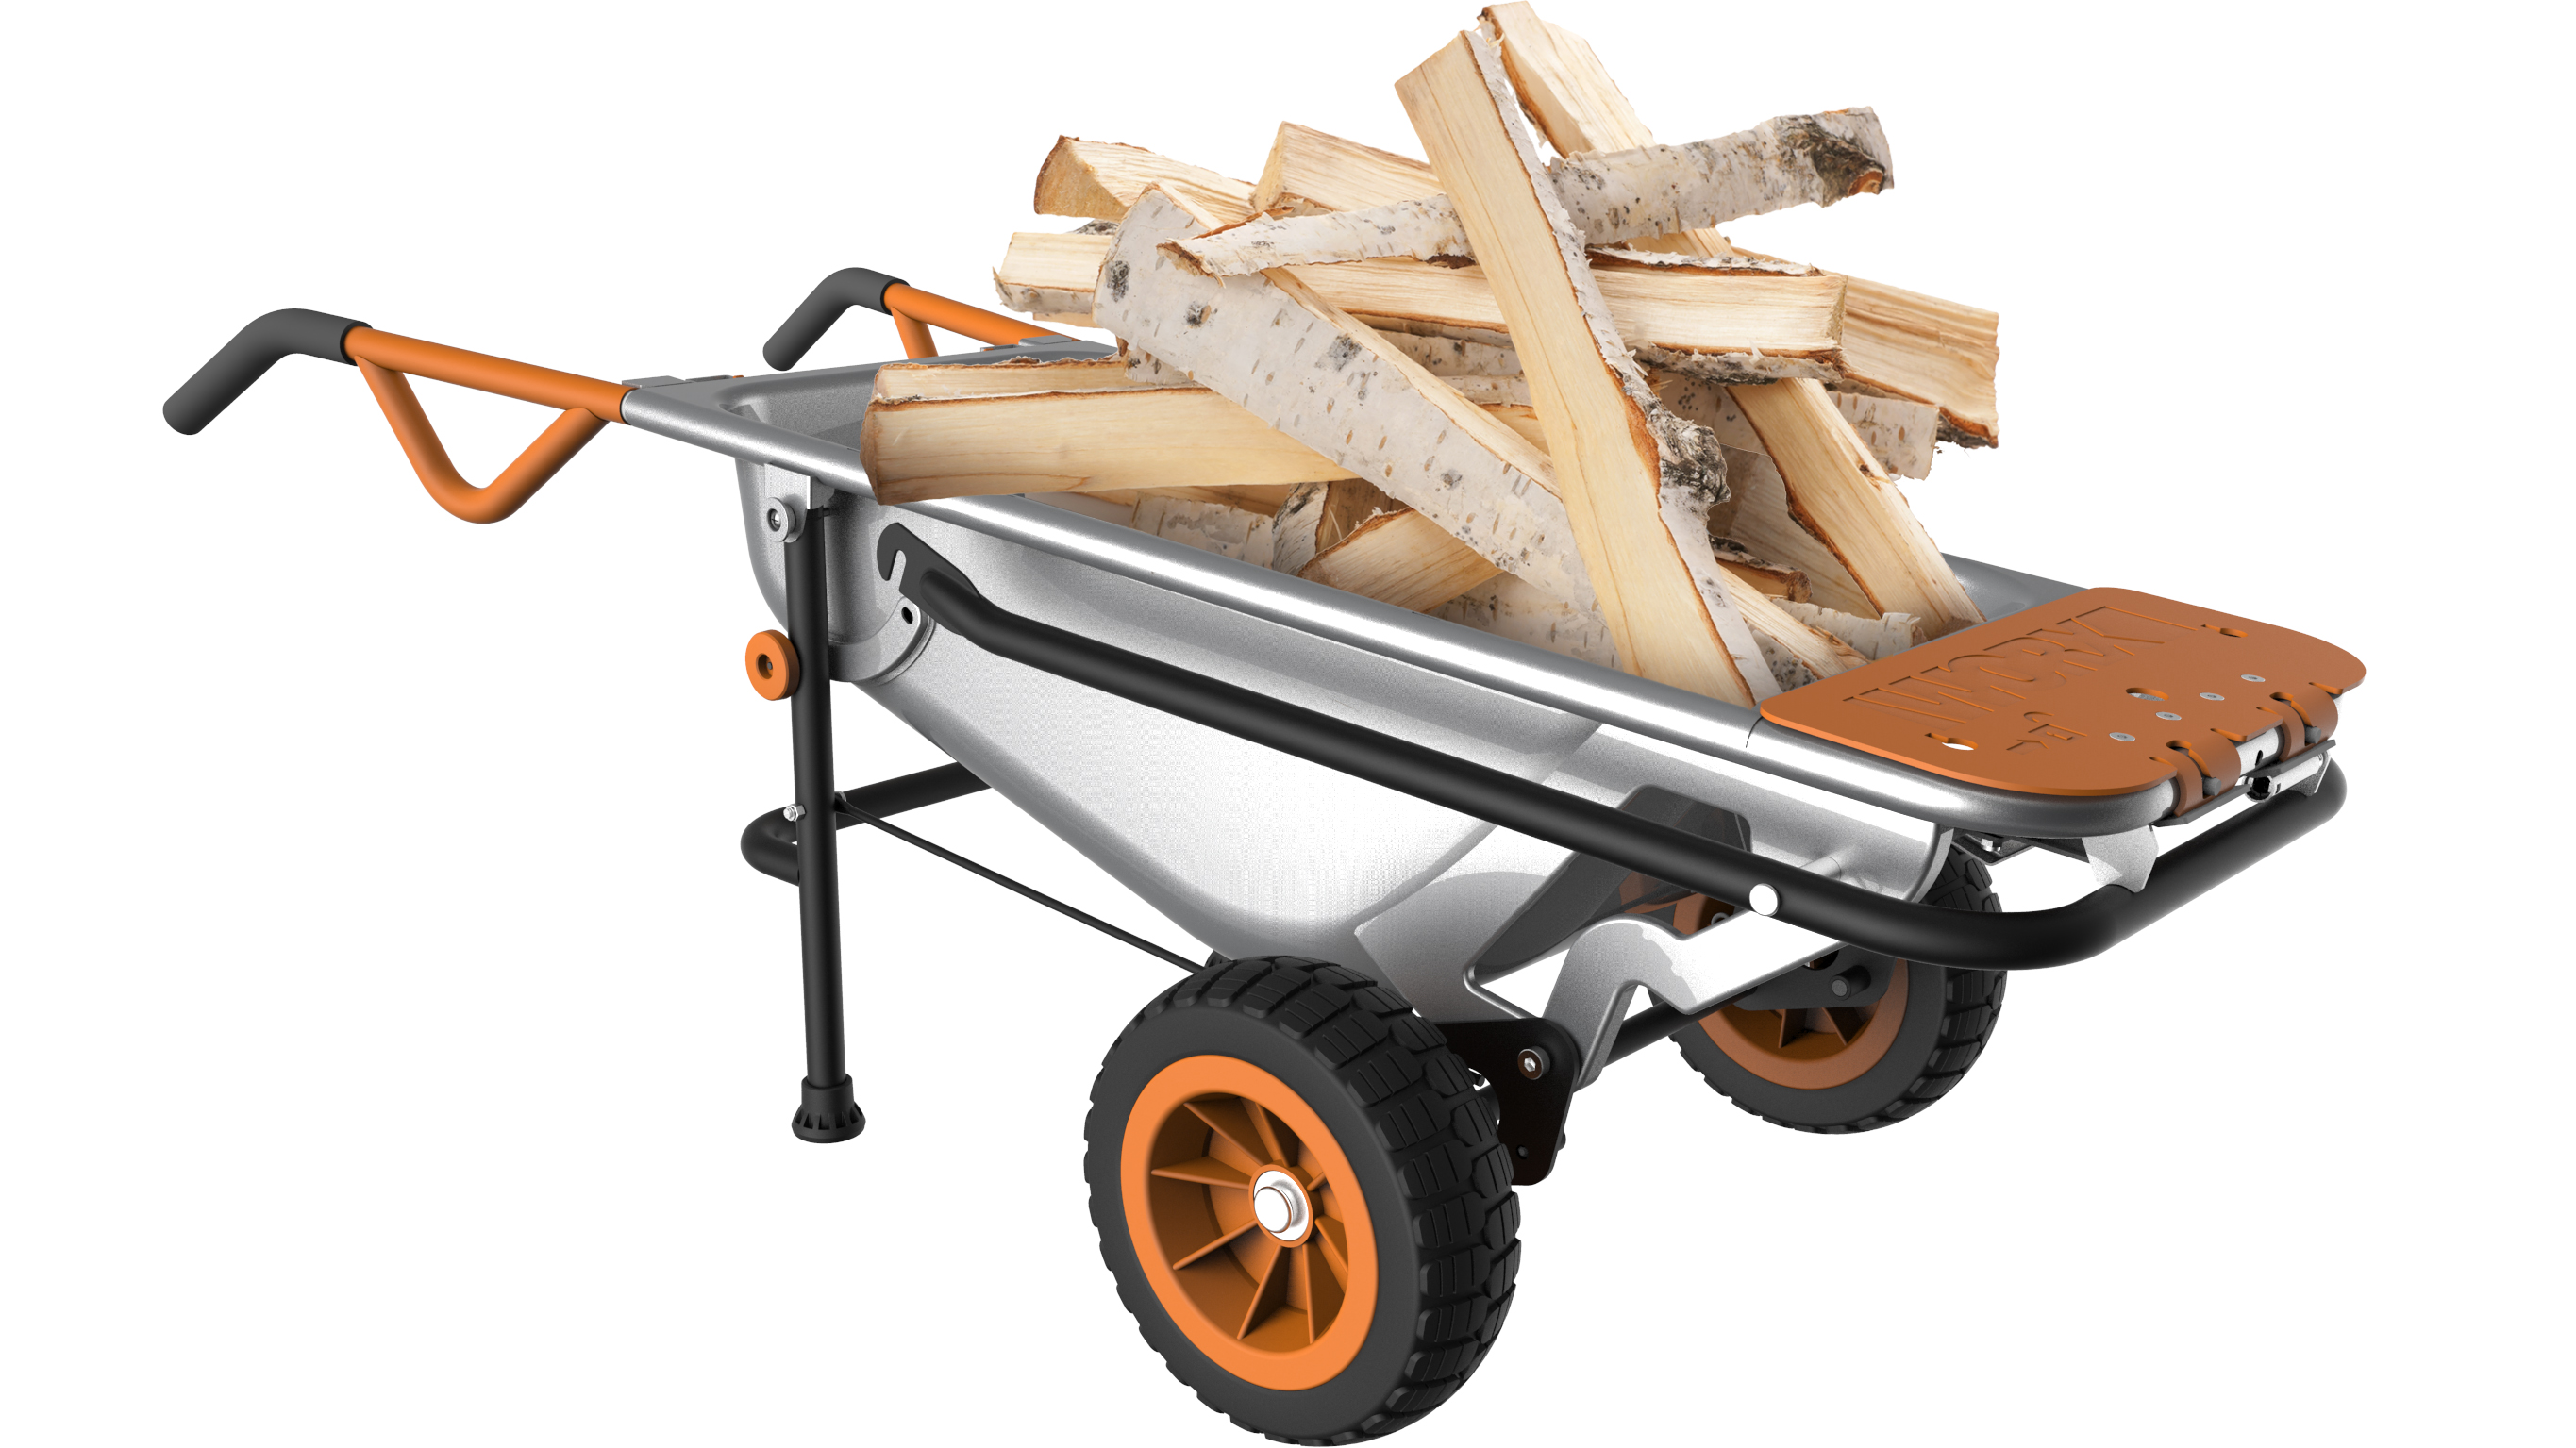 WORX AeroCart hauls firewood in wheelbarrow mode.